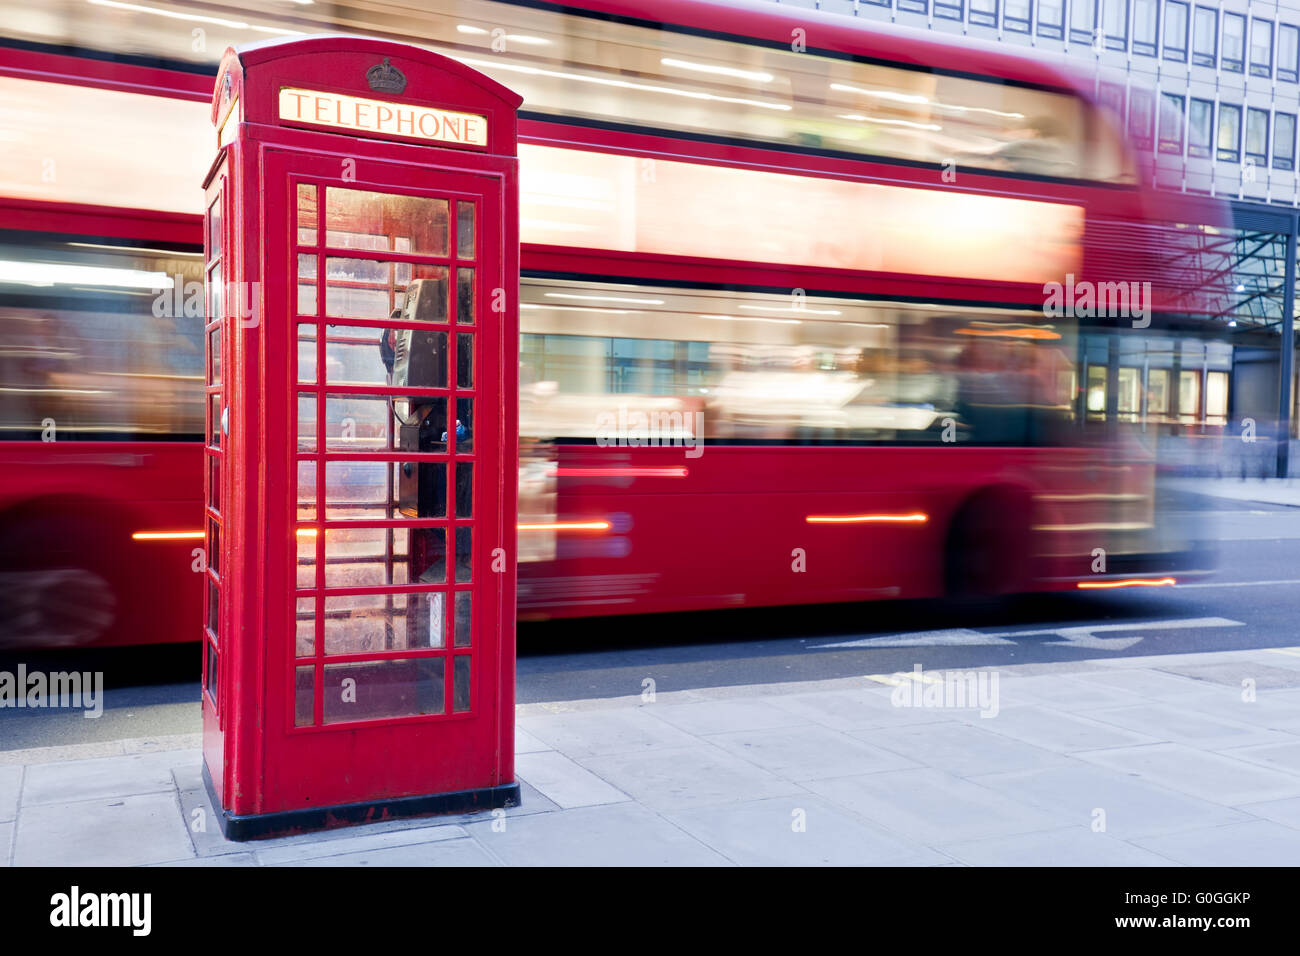 Londres, Royaume-Uni. Cabine téléphonique rouge et bus rouge passant. Symboles de l'Angleterre. Banque D'Images